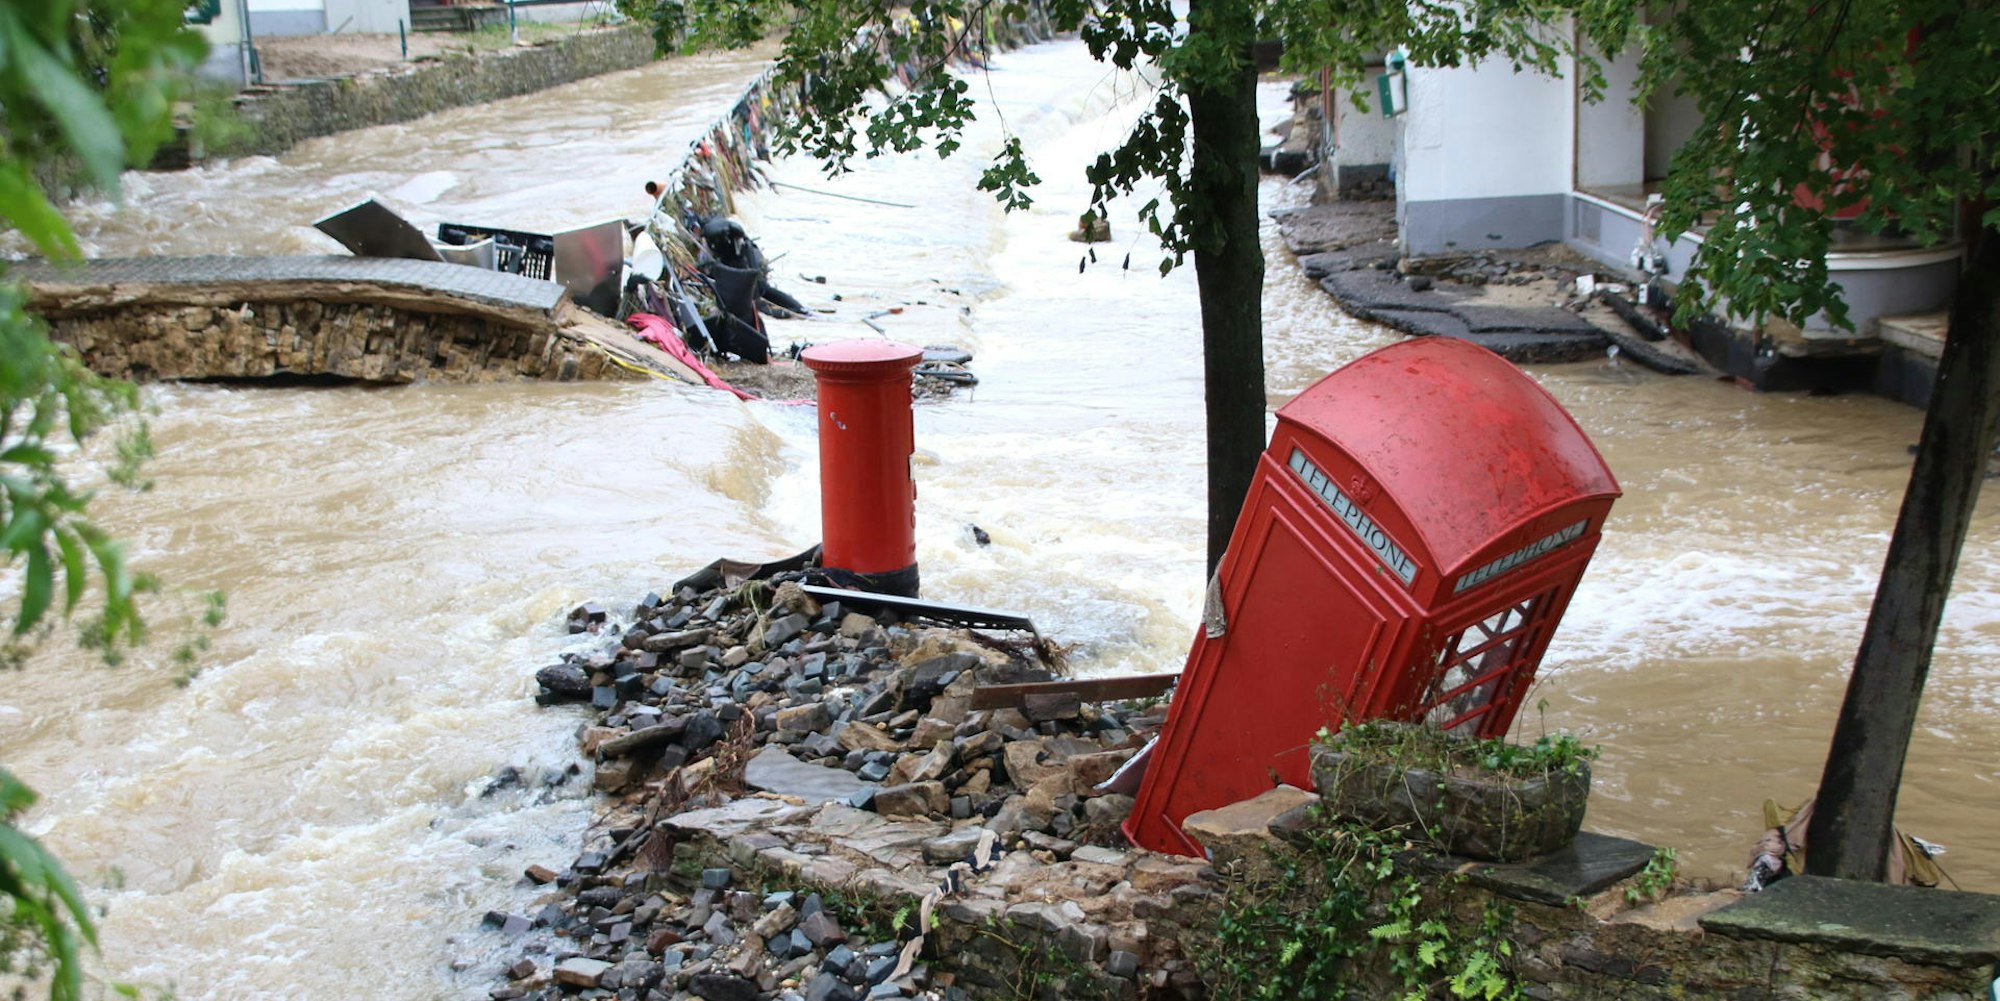 Zwei Tage nach der Flut, die vieles mitgerissen hatte, stand das Wasser noch in der Stadt.